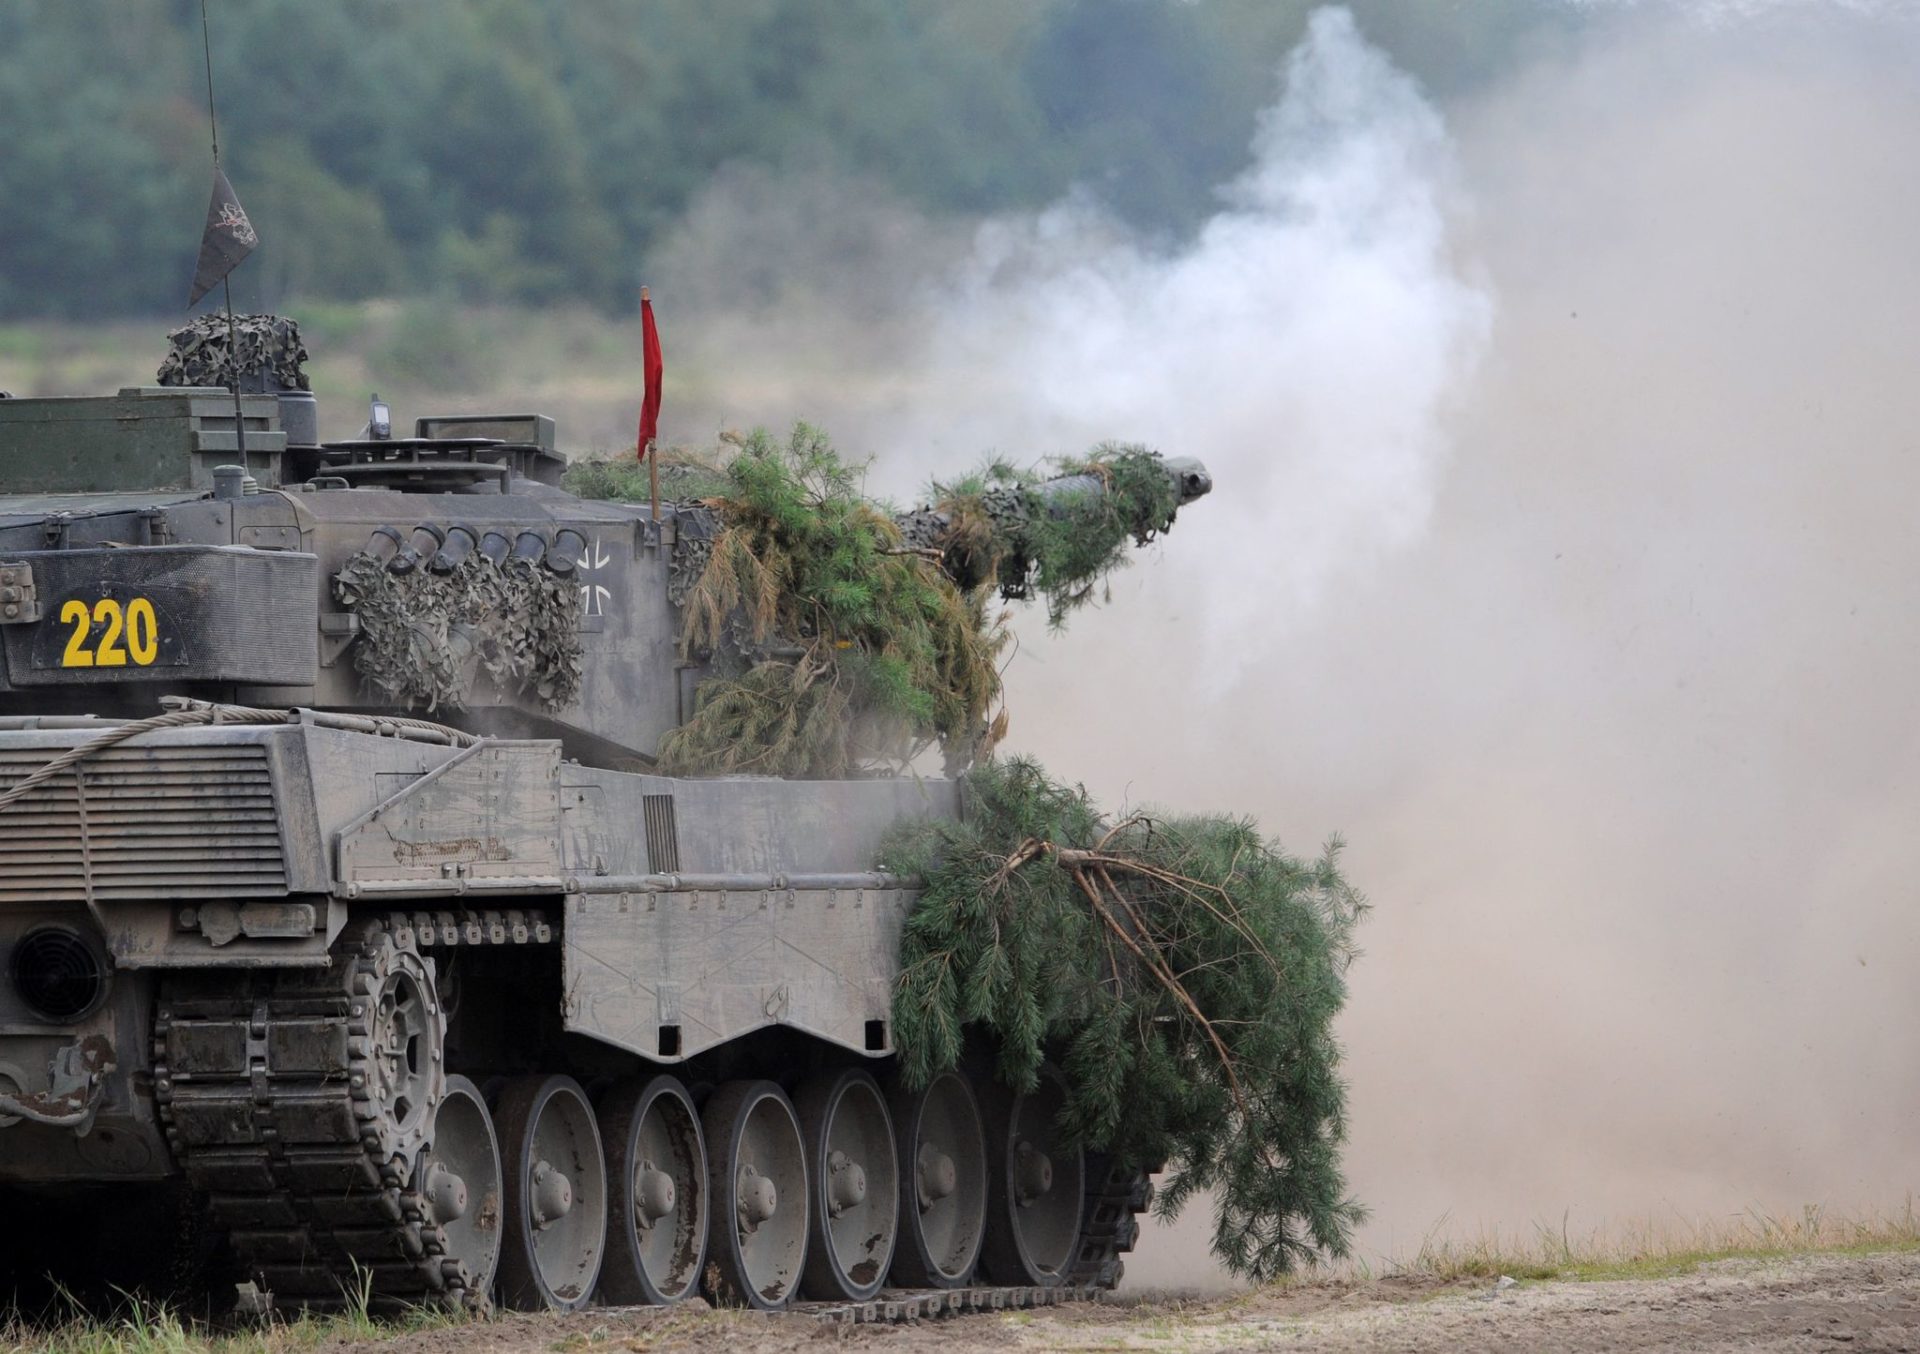 Ein Panzer Leopard 2A6 des Panzerlehrbataillones 93 der Bundeswehr schießt während eines Ausbildungsschießens auf dem Truppenübungsplatz Oberlausitz. Deutschland will in einem ersten Schritt 14 Leopard-Kampfpanzer des Typs 2A6 aus den Beständen der Bundeswehr in die Ukraine liefern. Das kündigte Regierungssprecher Hebestreit am Mittwoch in einer Mitteilung an.